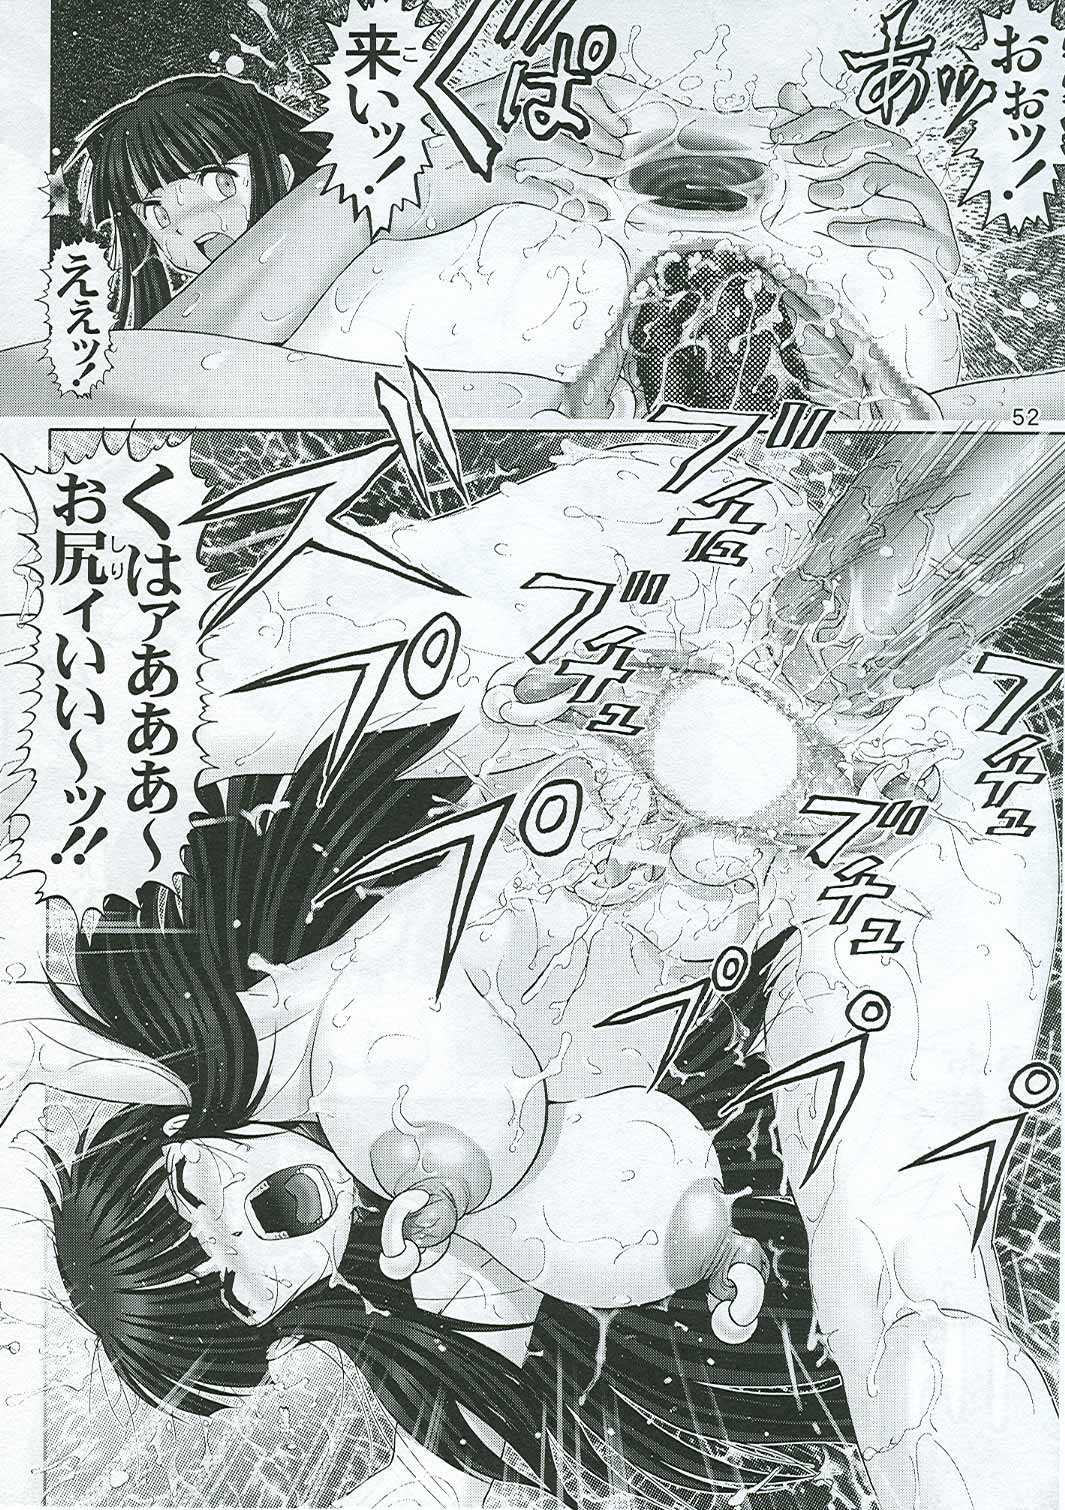 [Haruki GeNia] [2003-12-28] [C65] Mazo Shino 7 